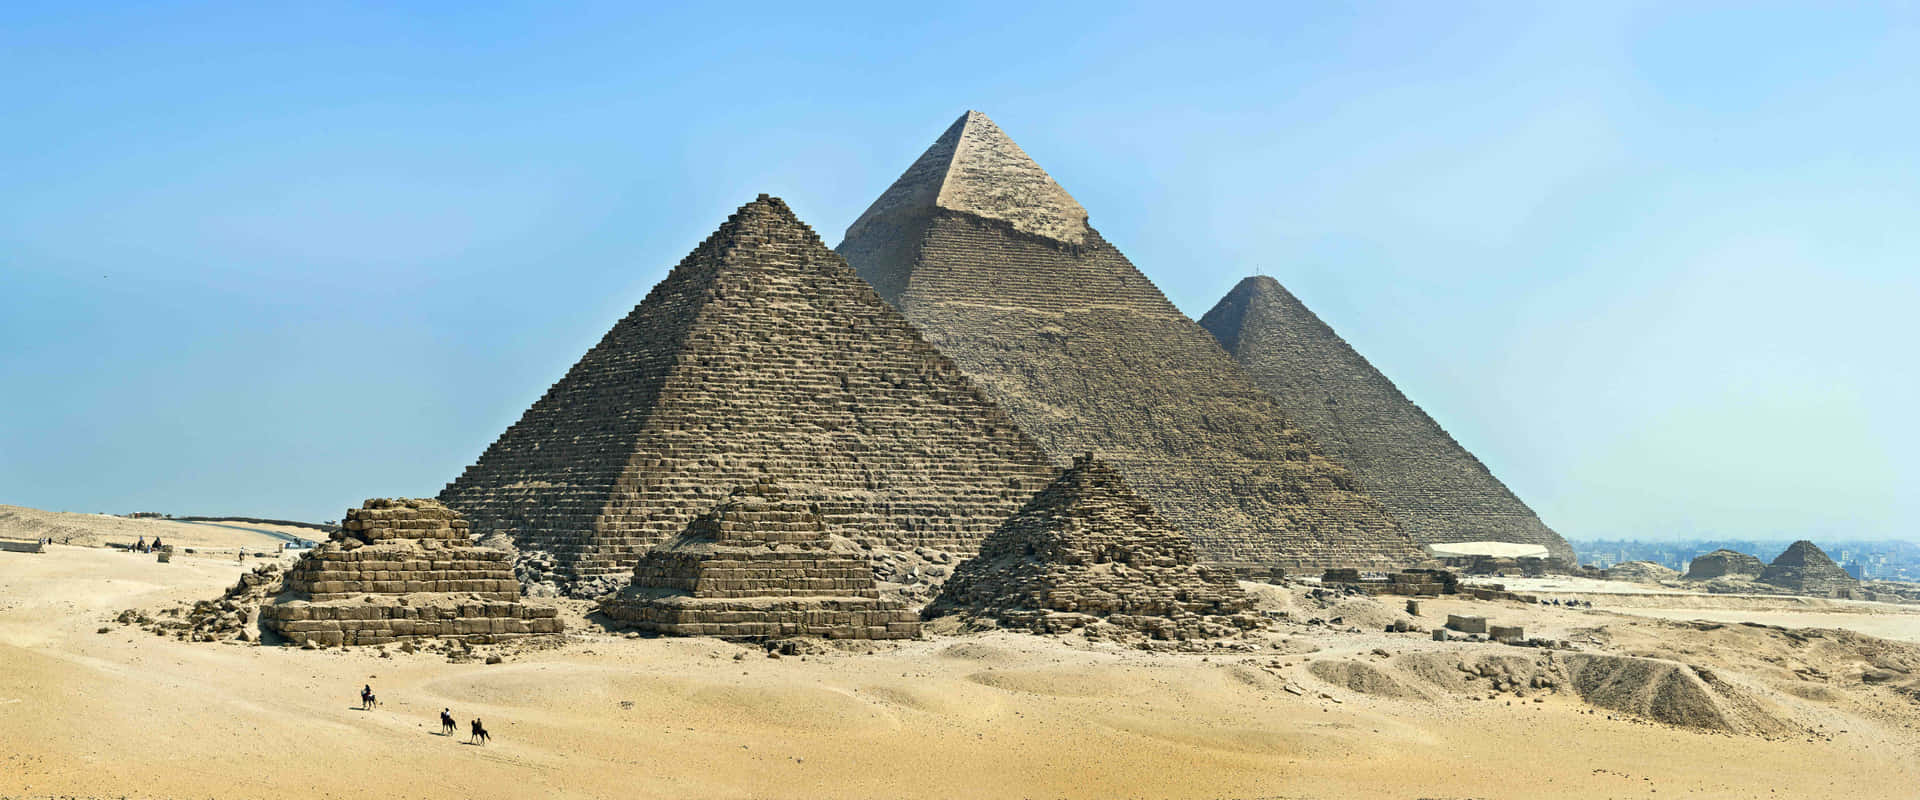 Pyramiderne ved Giza ved pyramidekomplekset i Egypten tapet Wallpaper